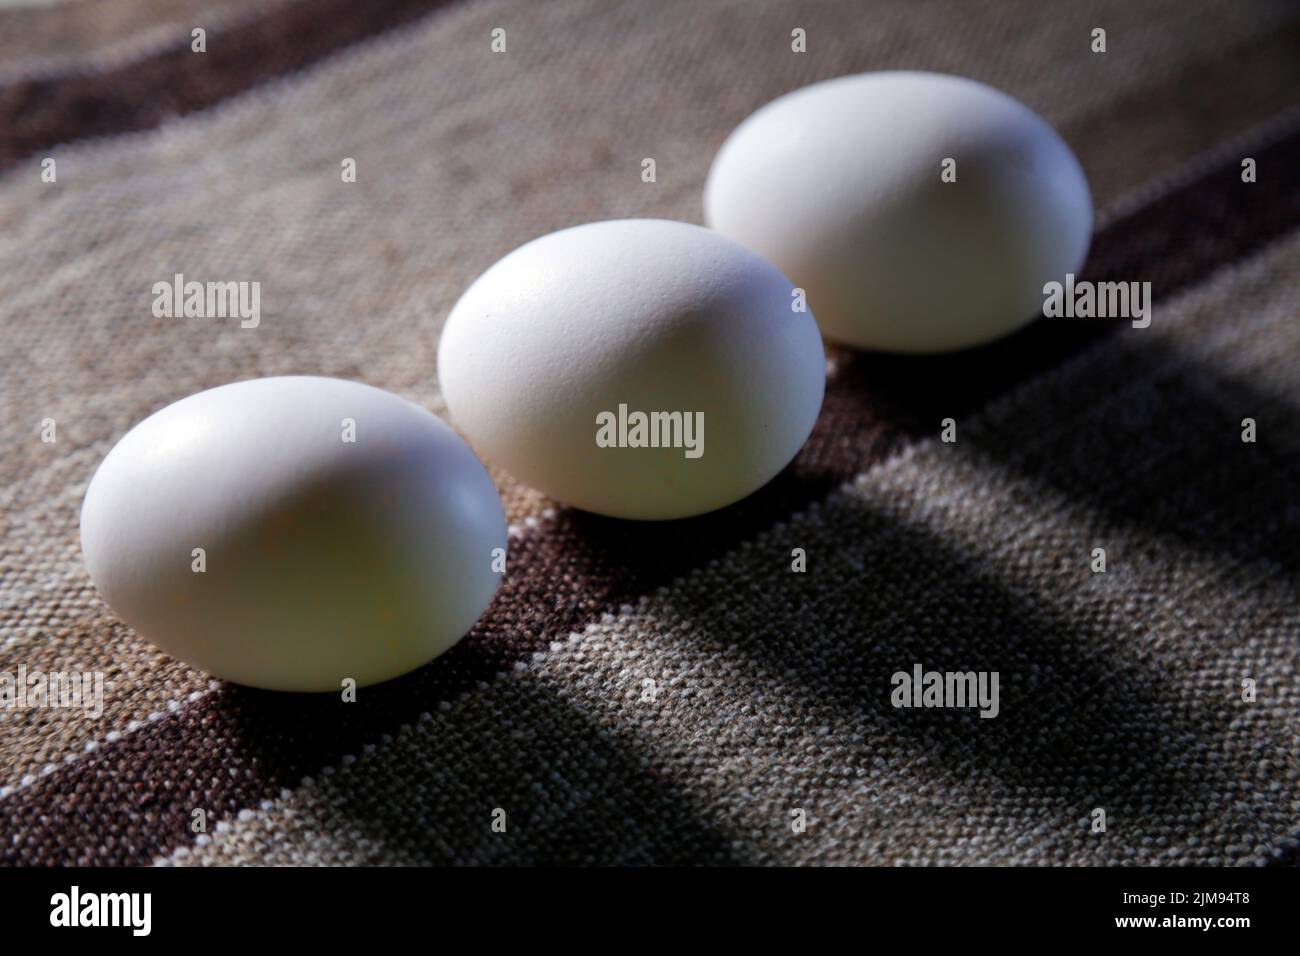 tres huevos blancos agrupados en la parte superior de la tela y suave iluminación lateral - enfoque selectivo Foto de stock